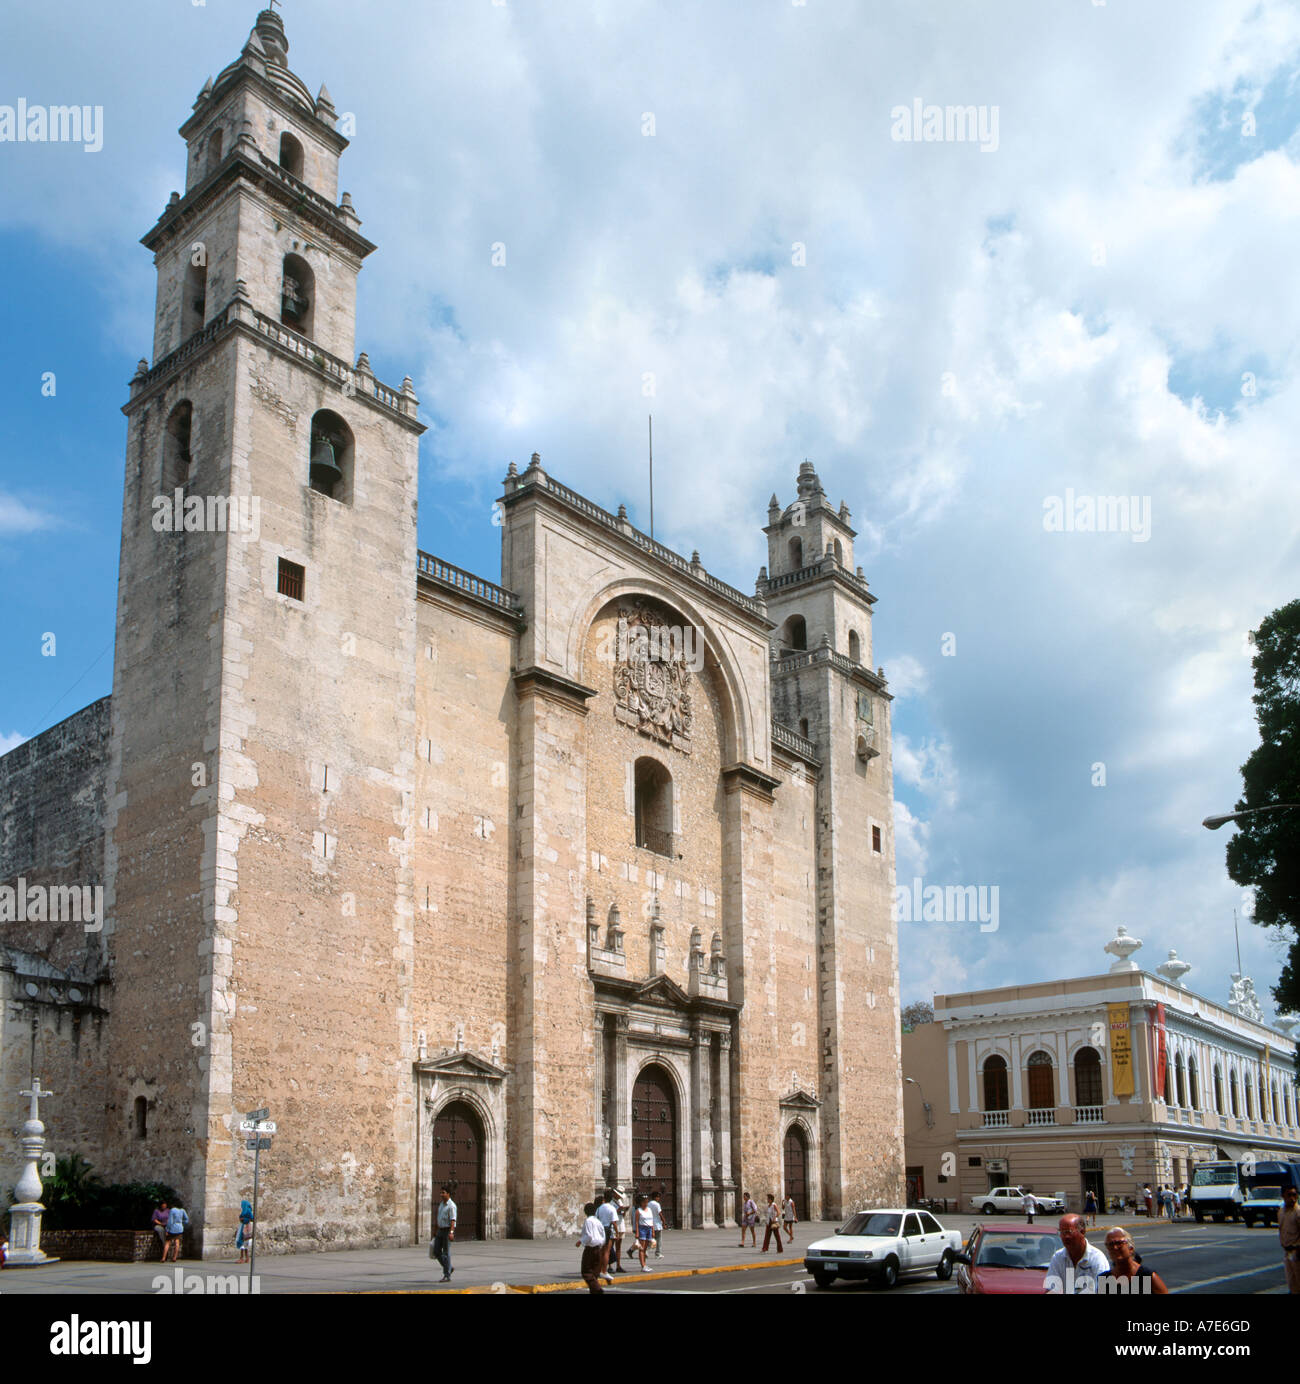 La cathédrale dans la ville historique de Merida, Yucatan, Mexique Banque D'Images